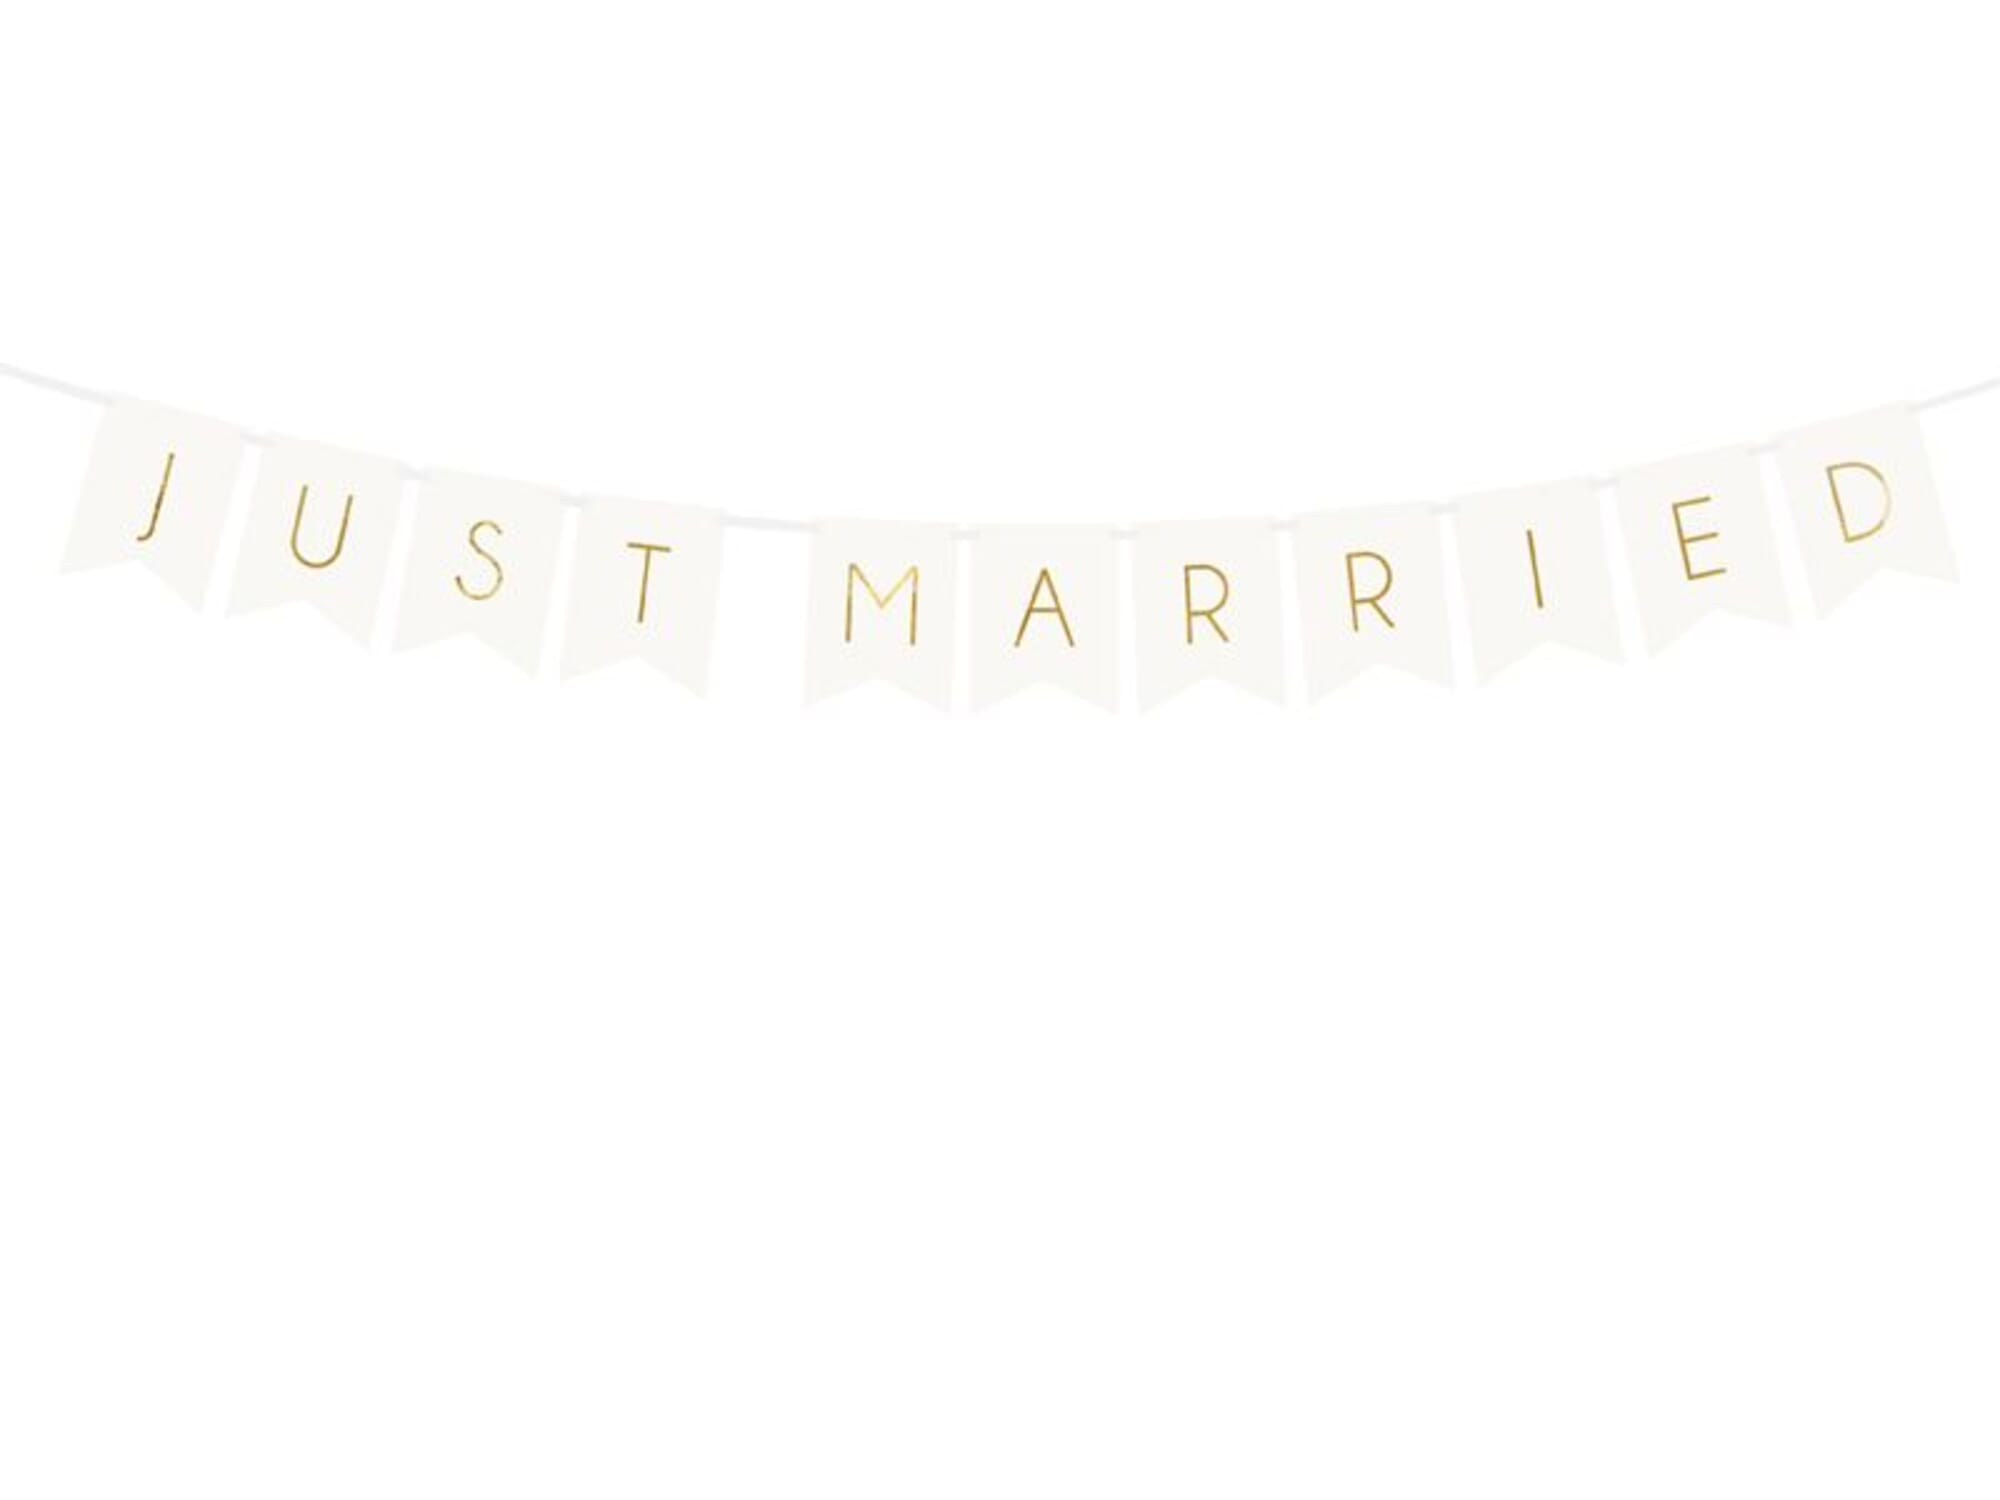 Banner JUST MARRIED weiss, Hochzeitsdeko